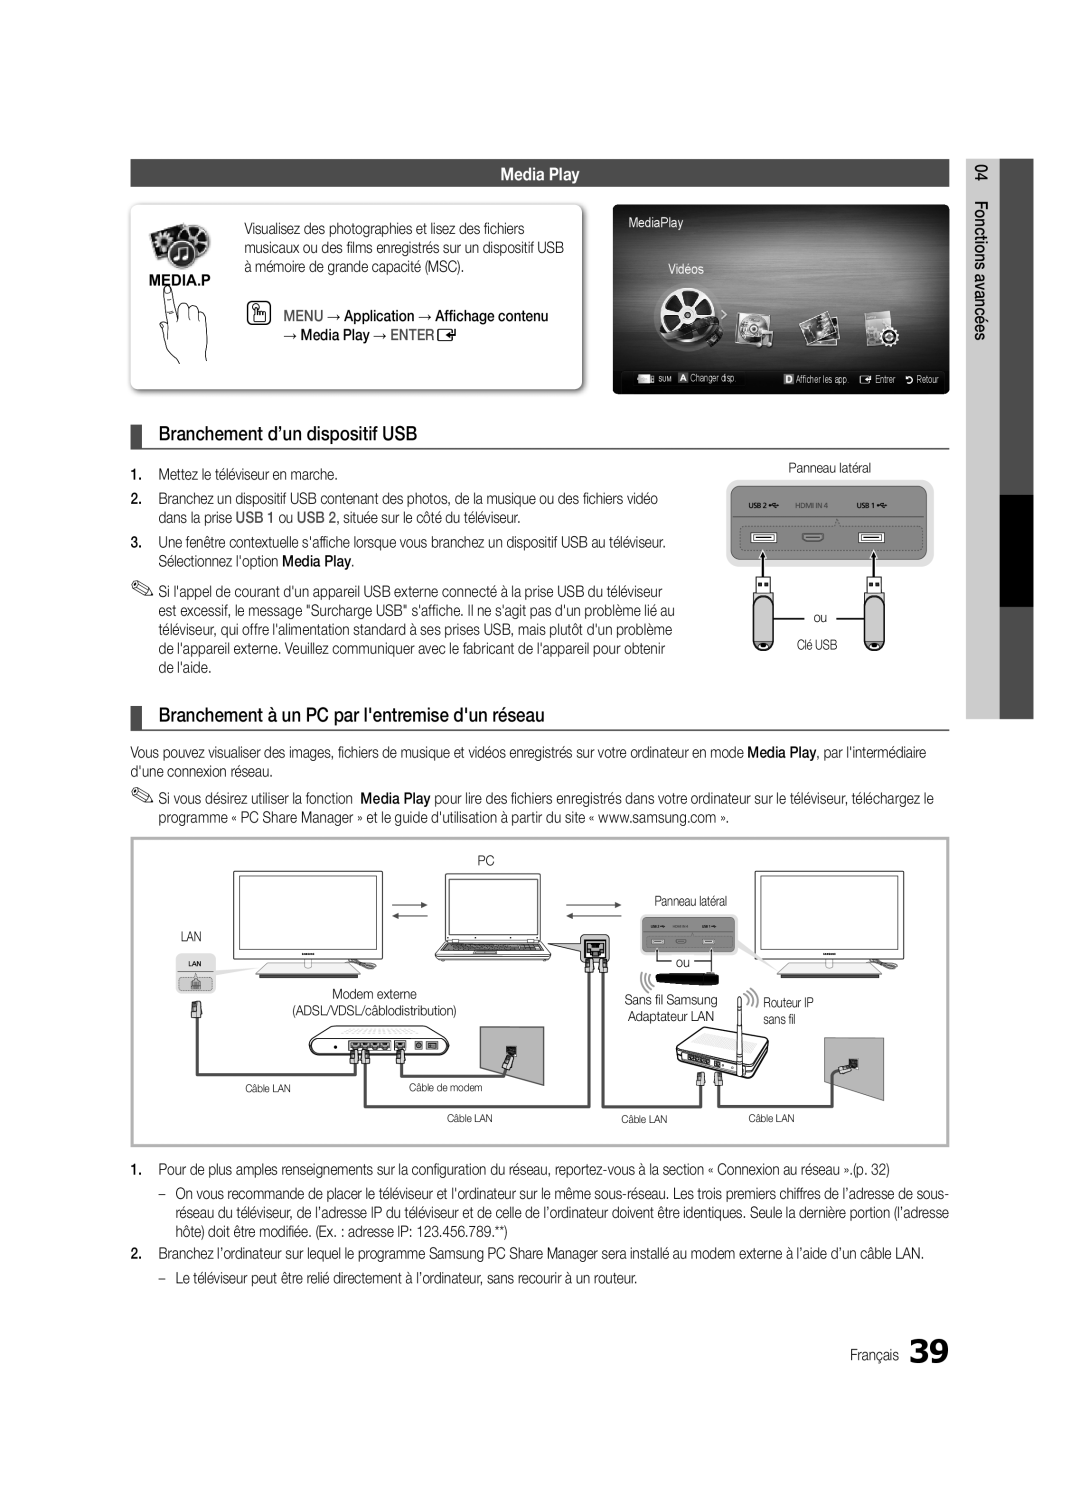 Samsung Series C9 Branchement d’un dispositif USB, Branchement à un PC par lentremise dun réseau, Media Play, Media.P 